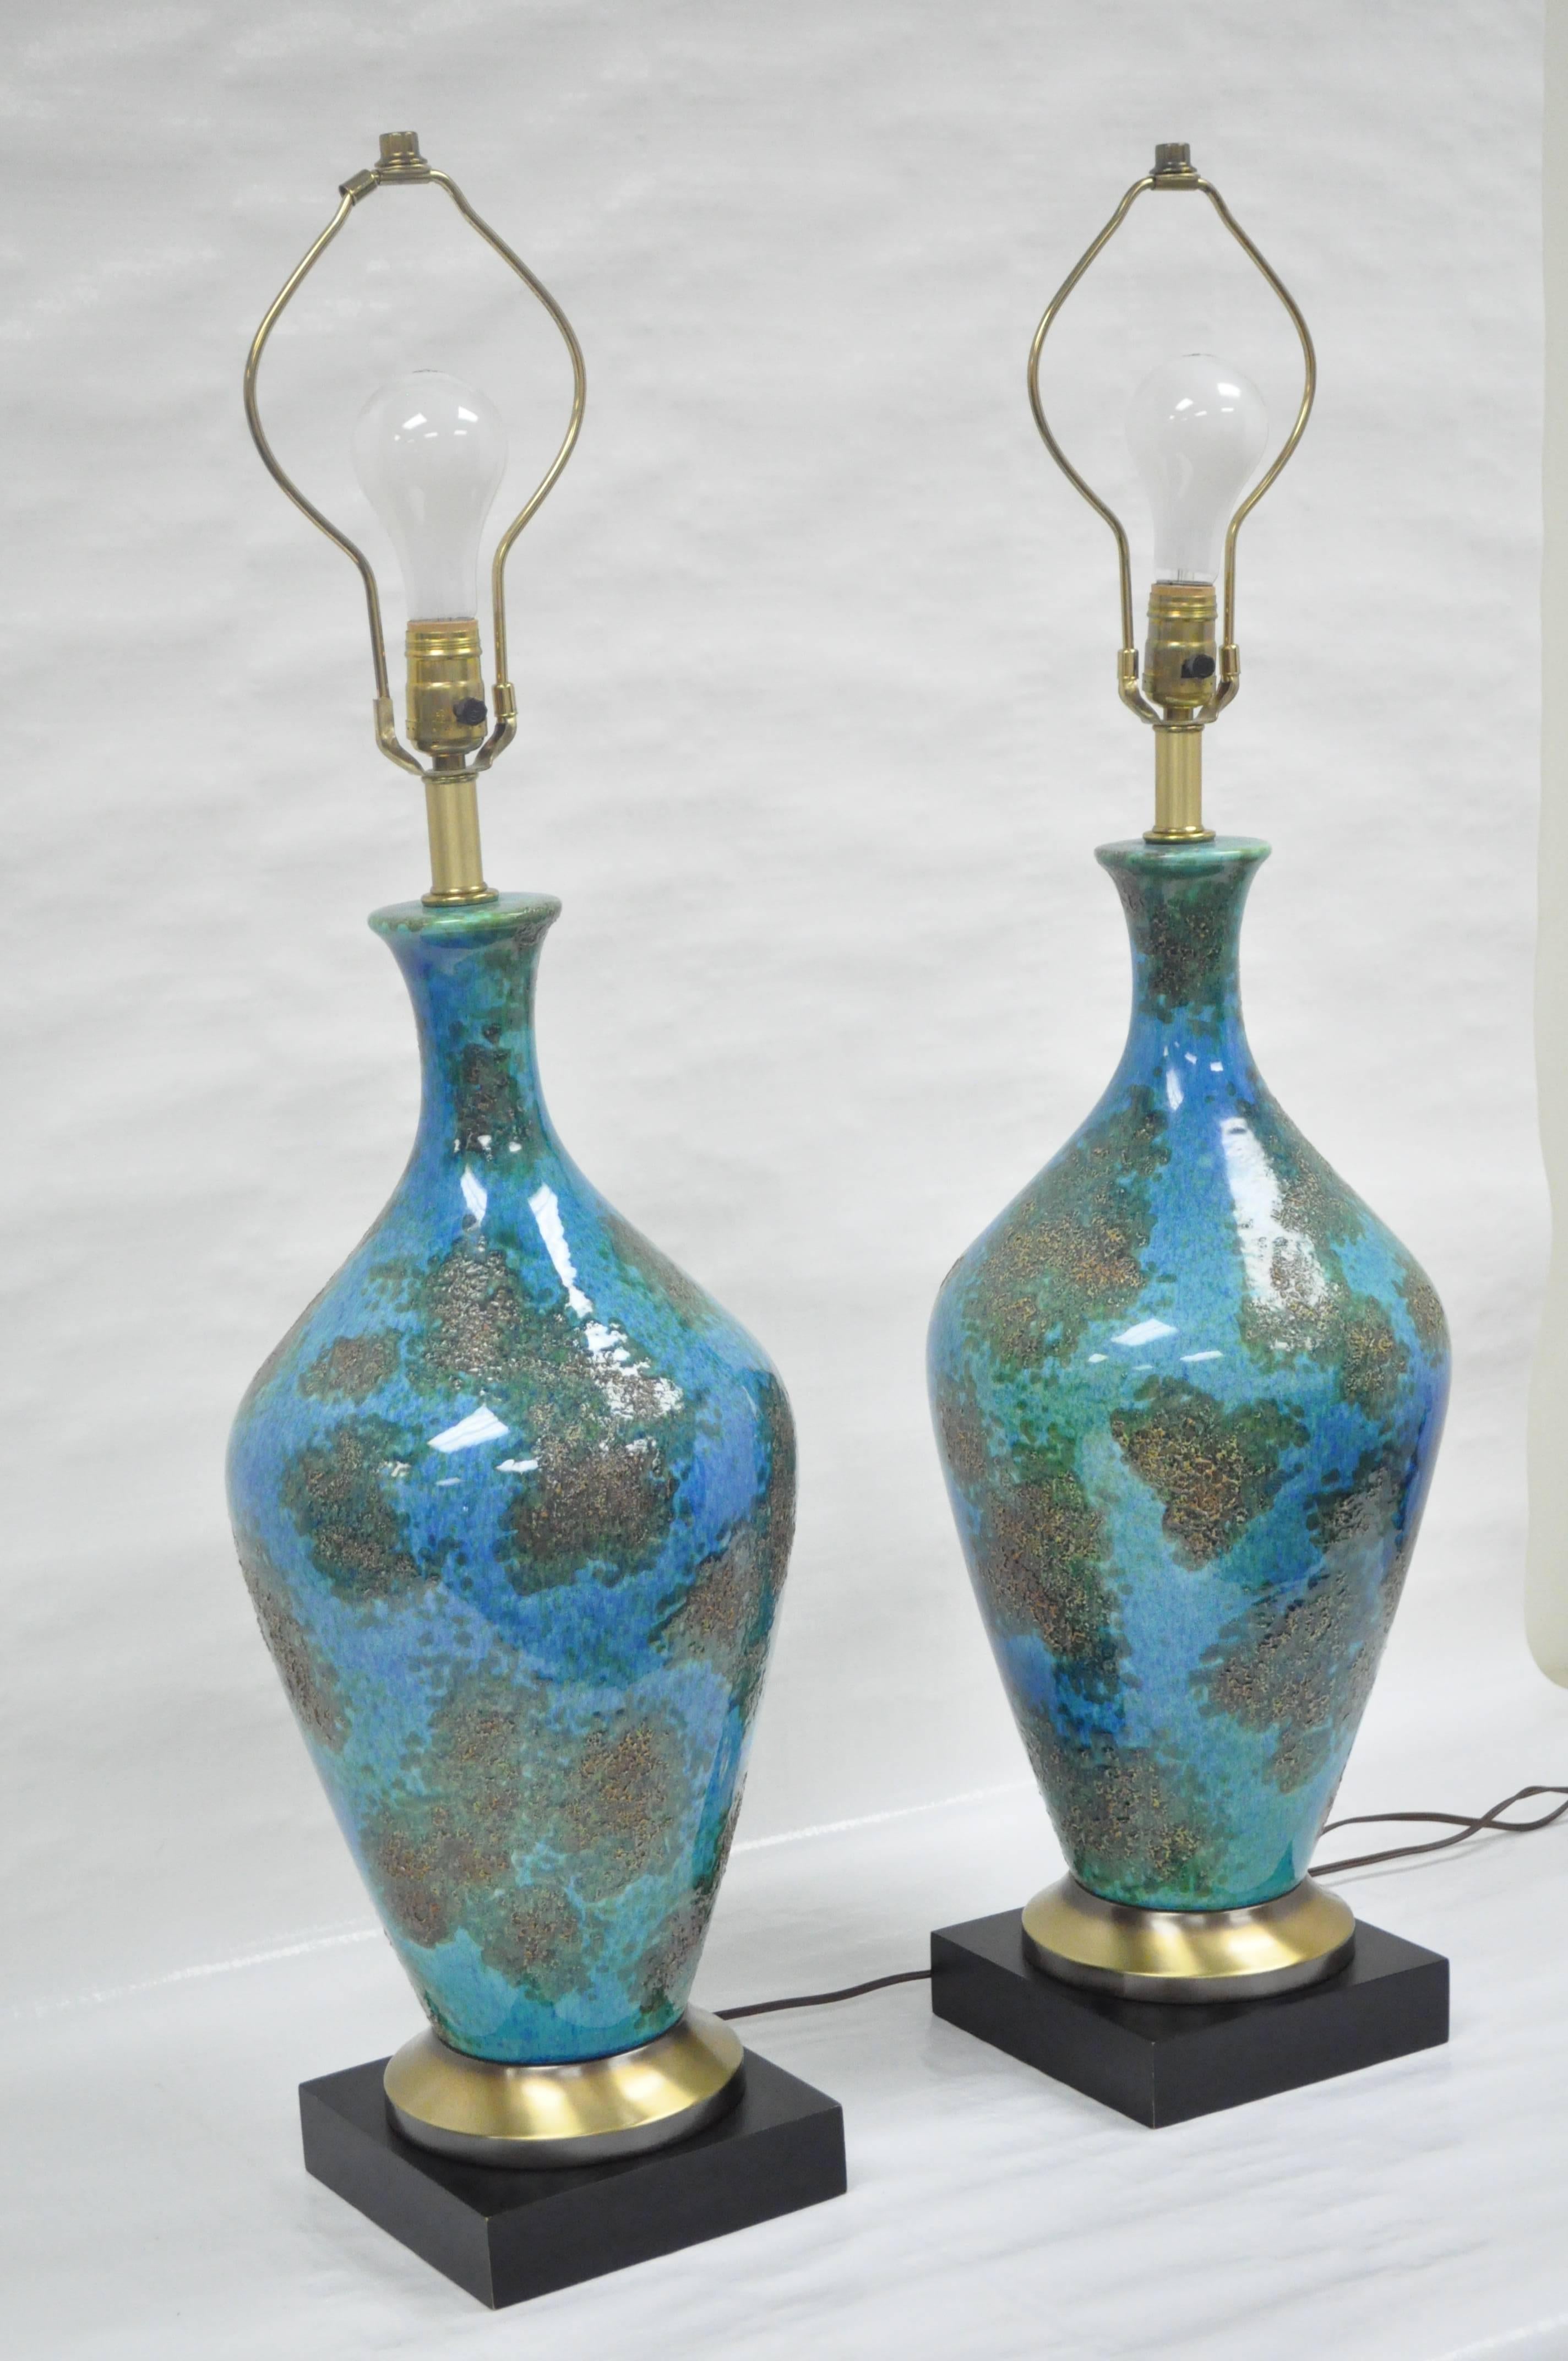 Remarquable paire de lampes de table sculpturales de qualité en céramique bleue émaillée. La paire présente des tiges en céramique émaillée reposant sur des bases en laiton et en bois peint avec des prises à trois voies.